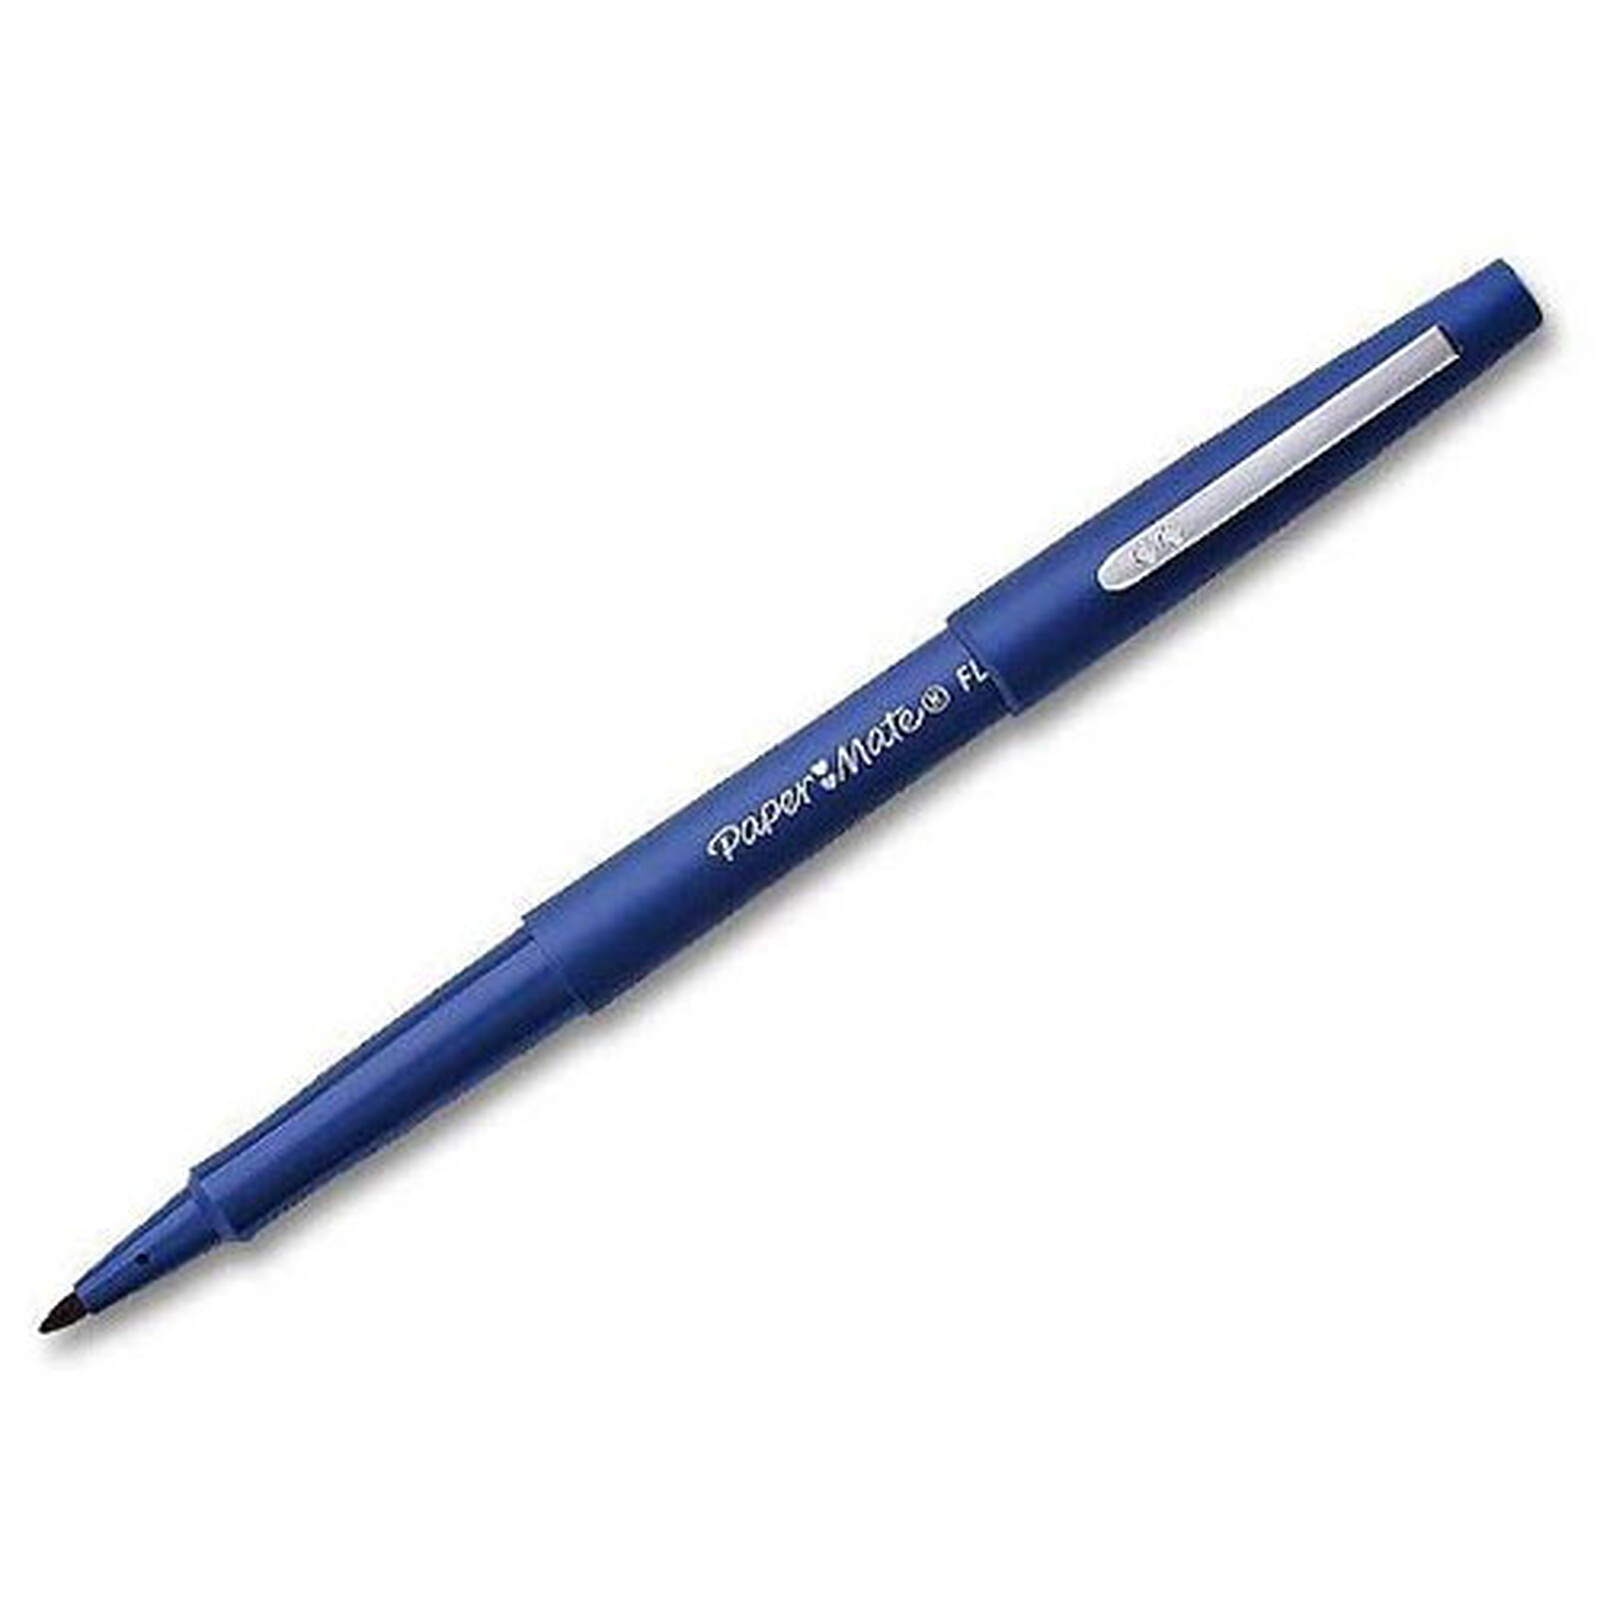 PAPERMATE Flair stylo feutre bleu - Stylo & feutre - Garantie 3 ans LDLC